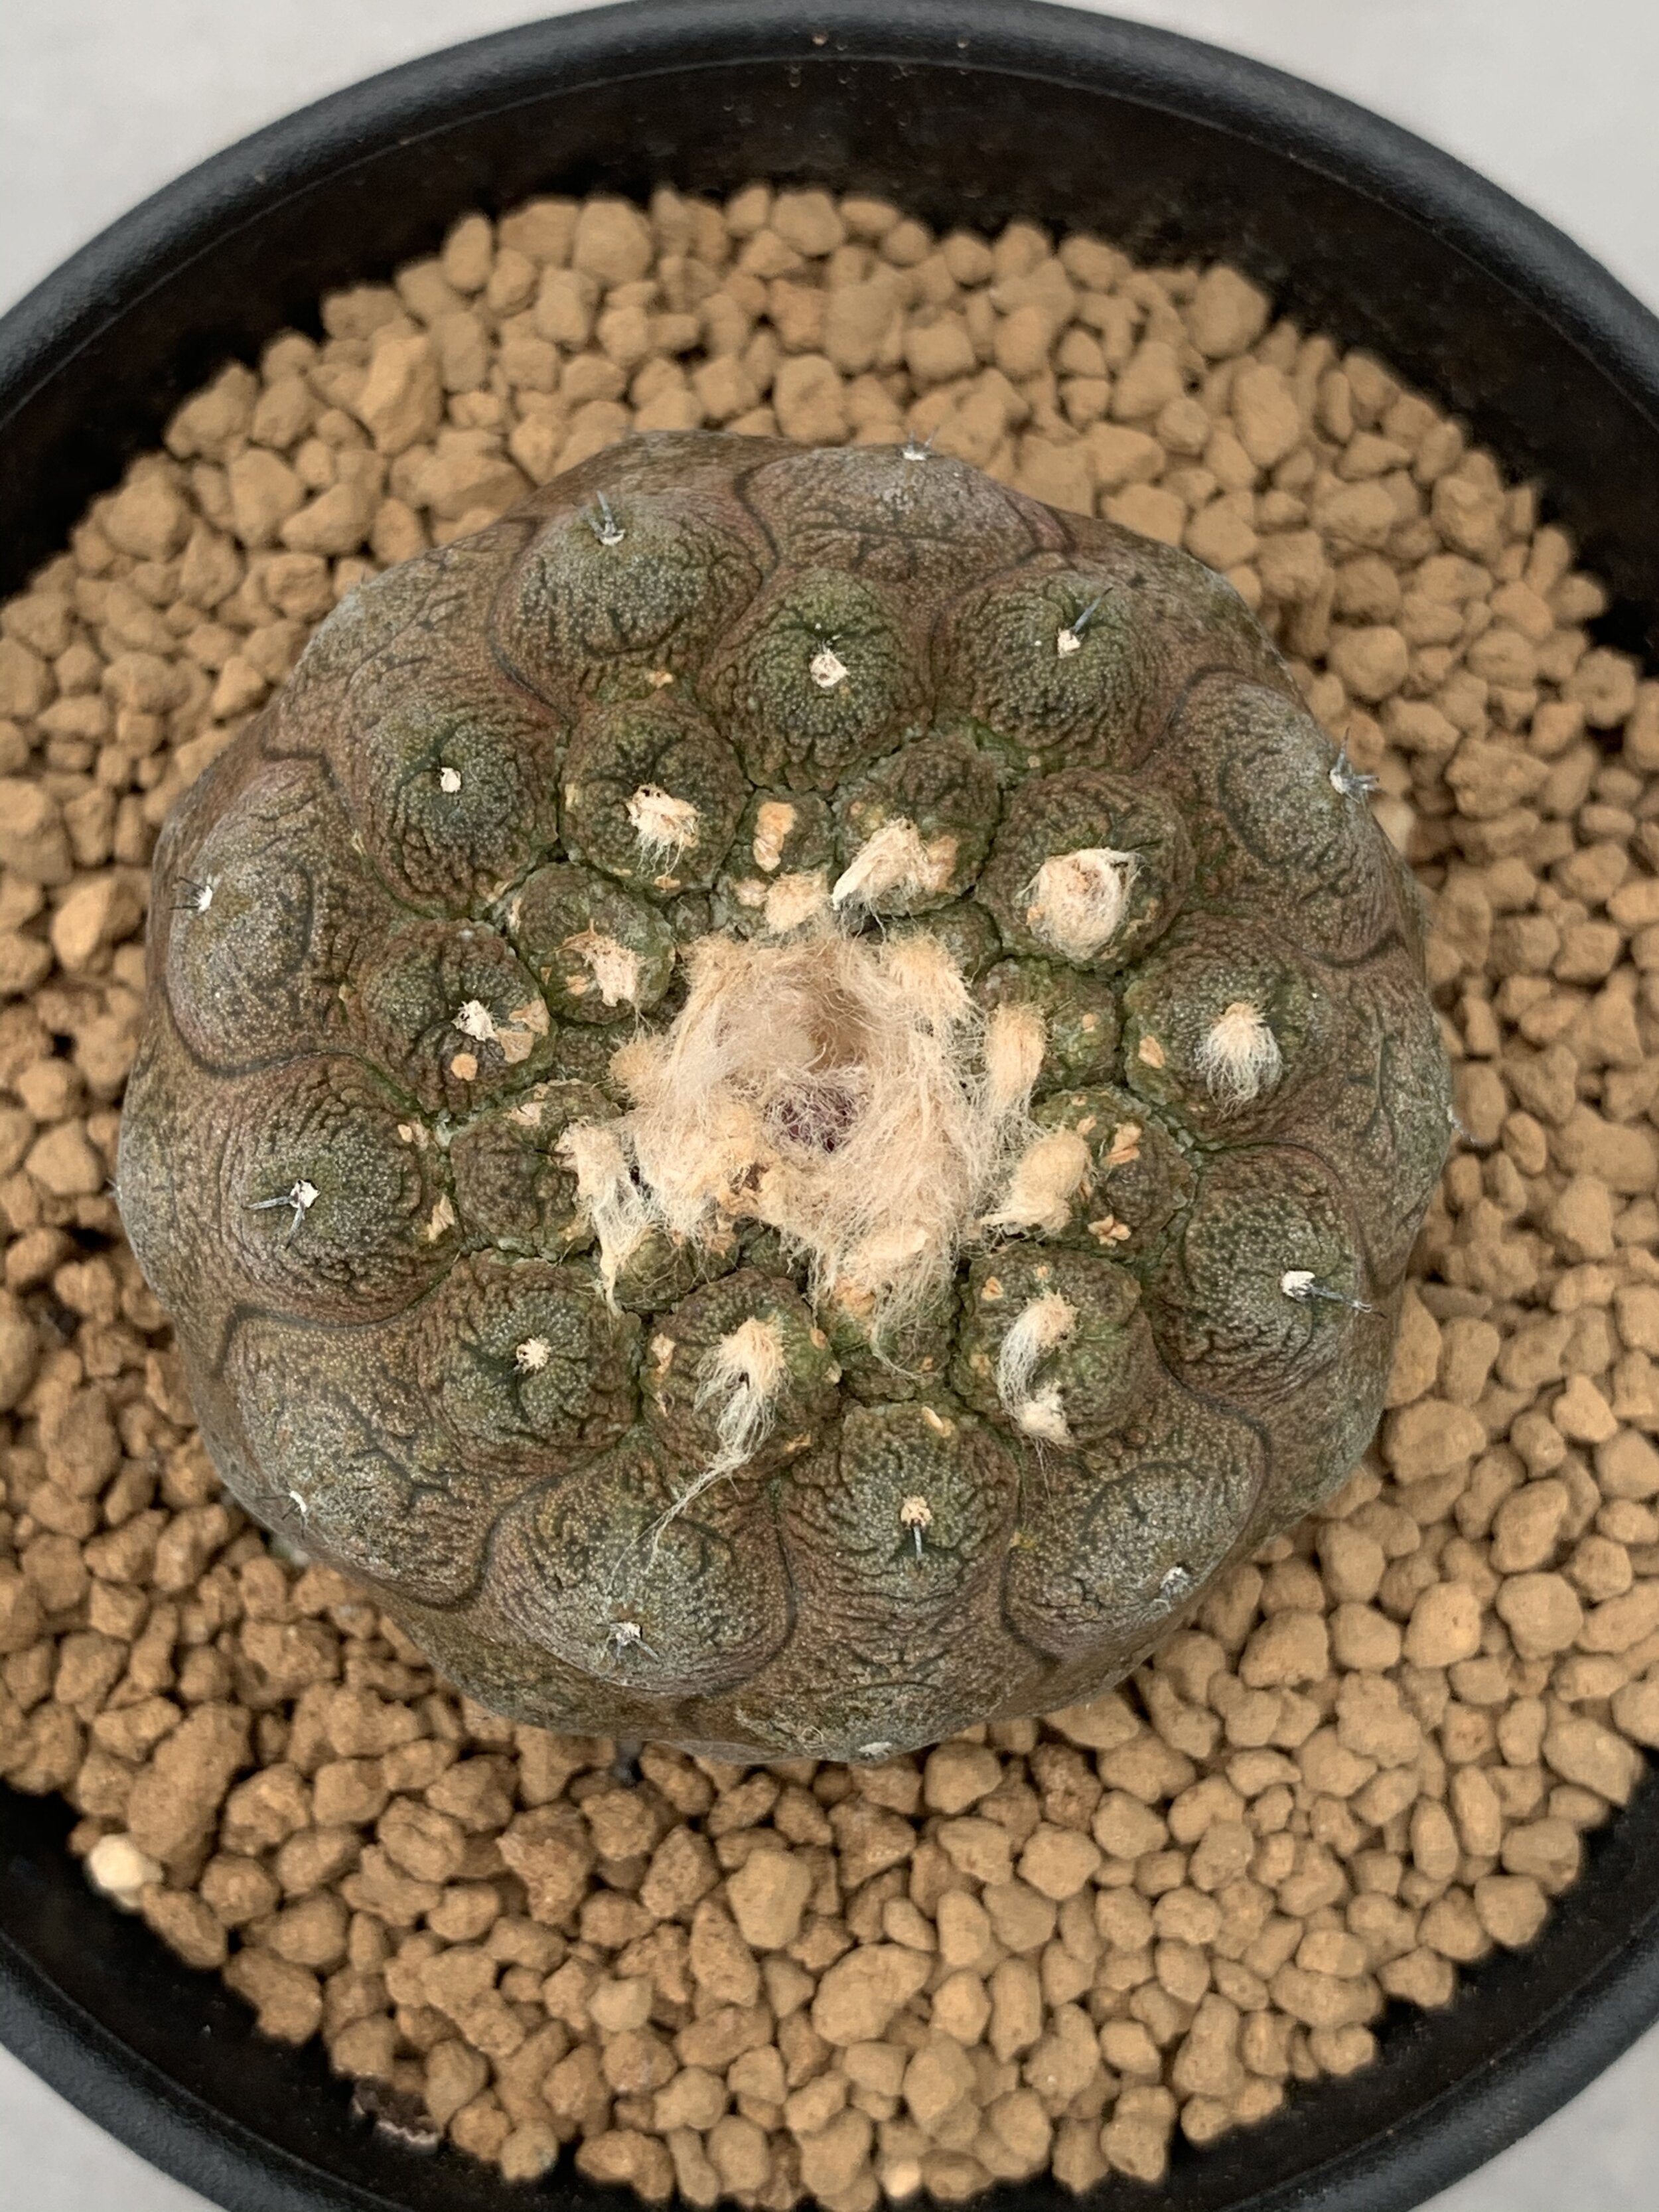 Copiapoa Hypogaea Lizard Skin/1pc Rare Cactus